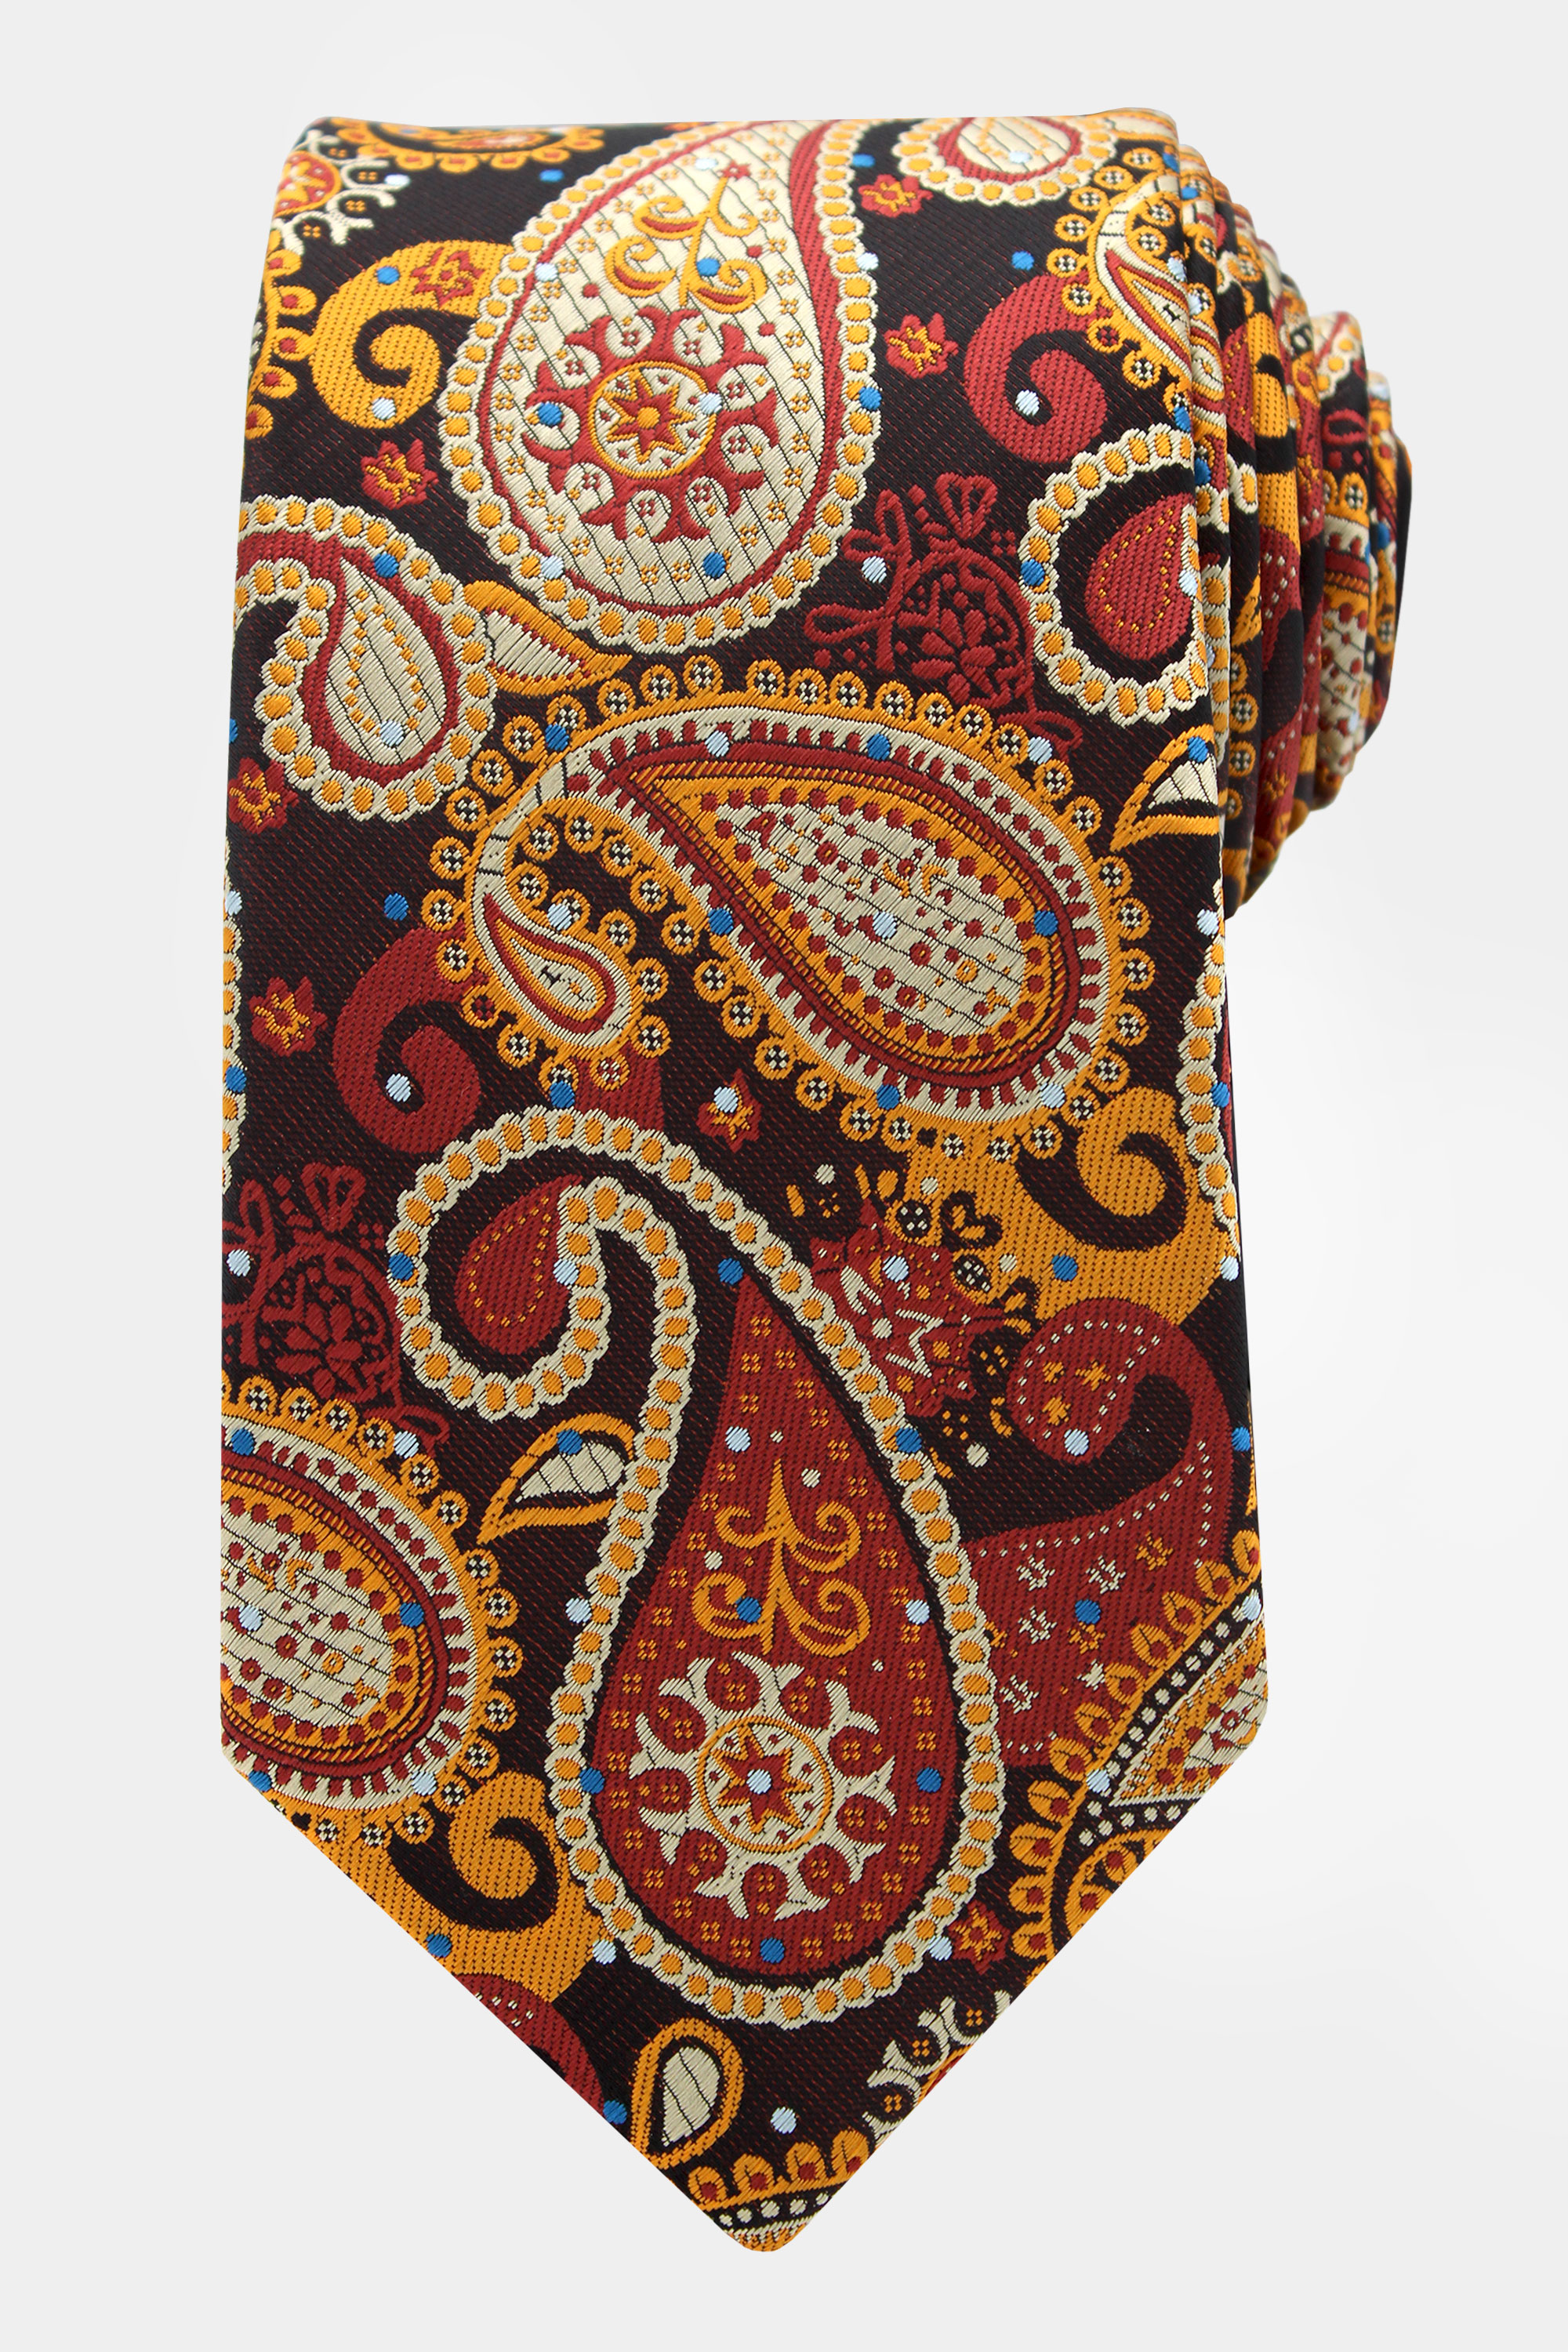 Burnt-Orange-Tie-Groom-Wedding-Necktie-from-Gentlemansguru.com